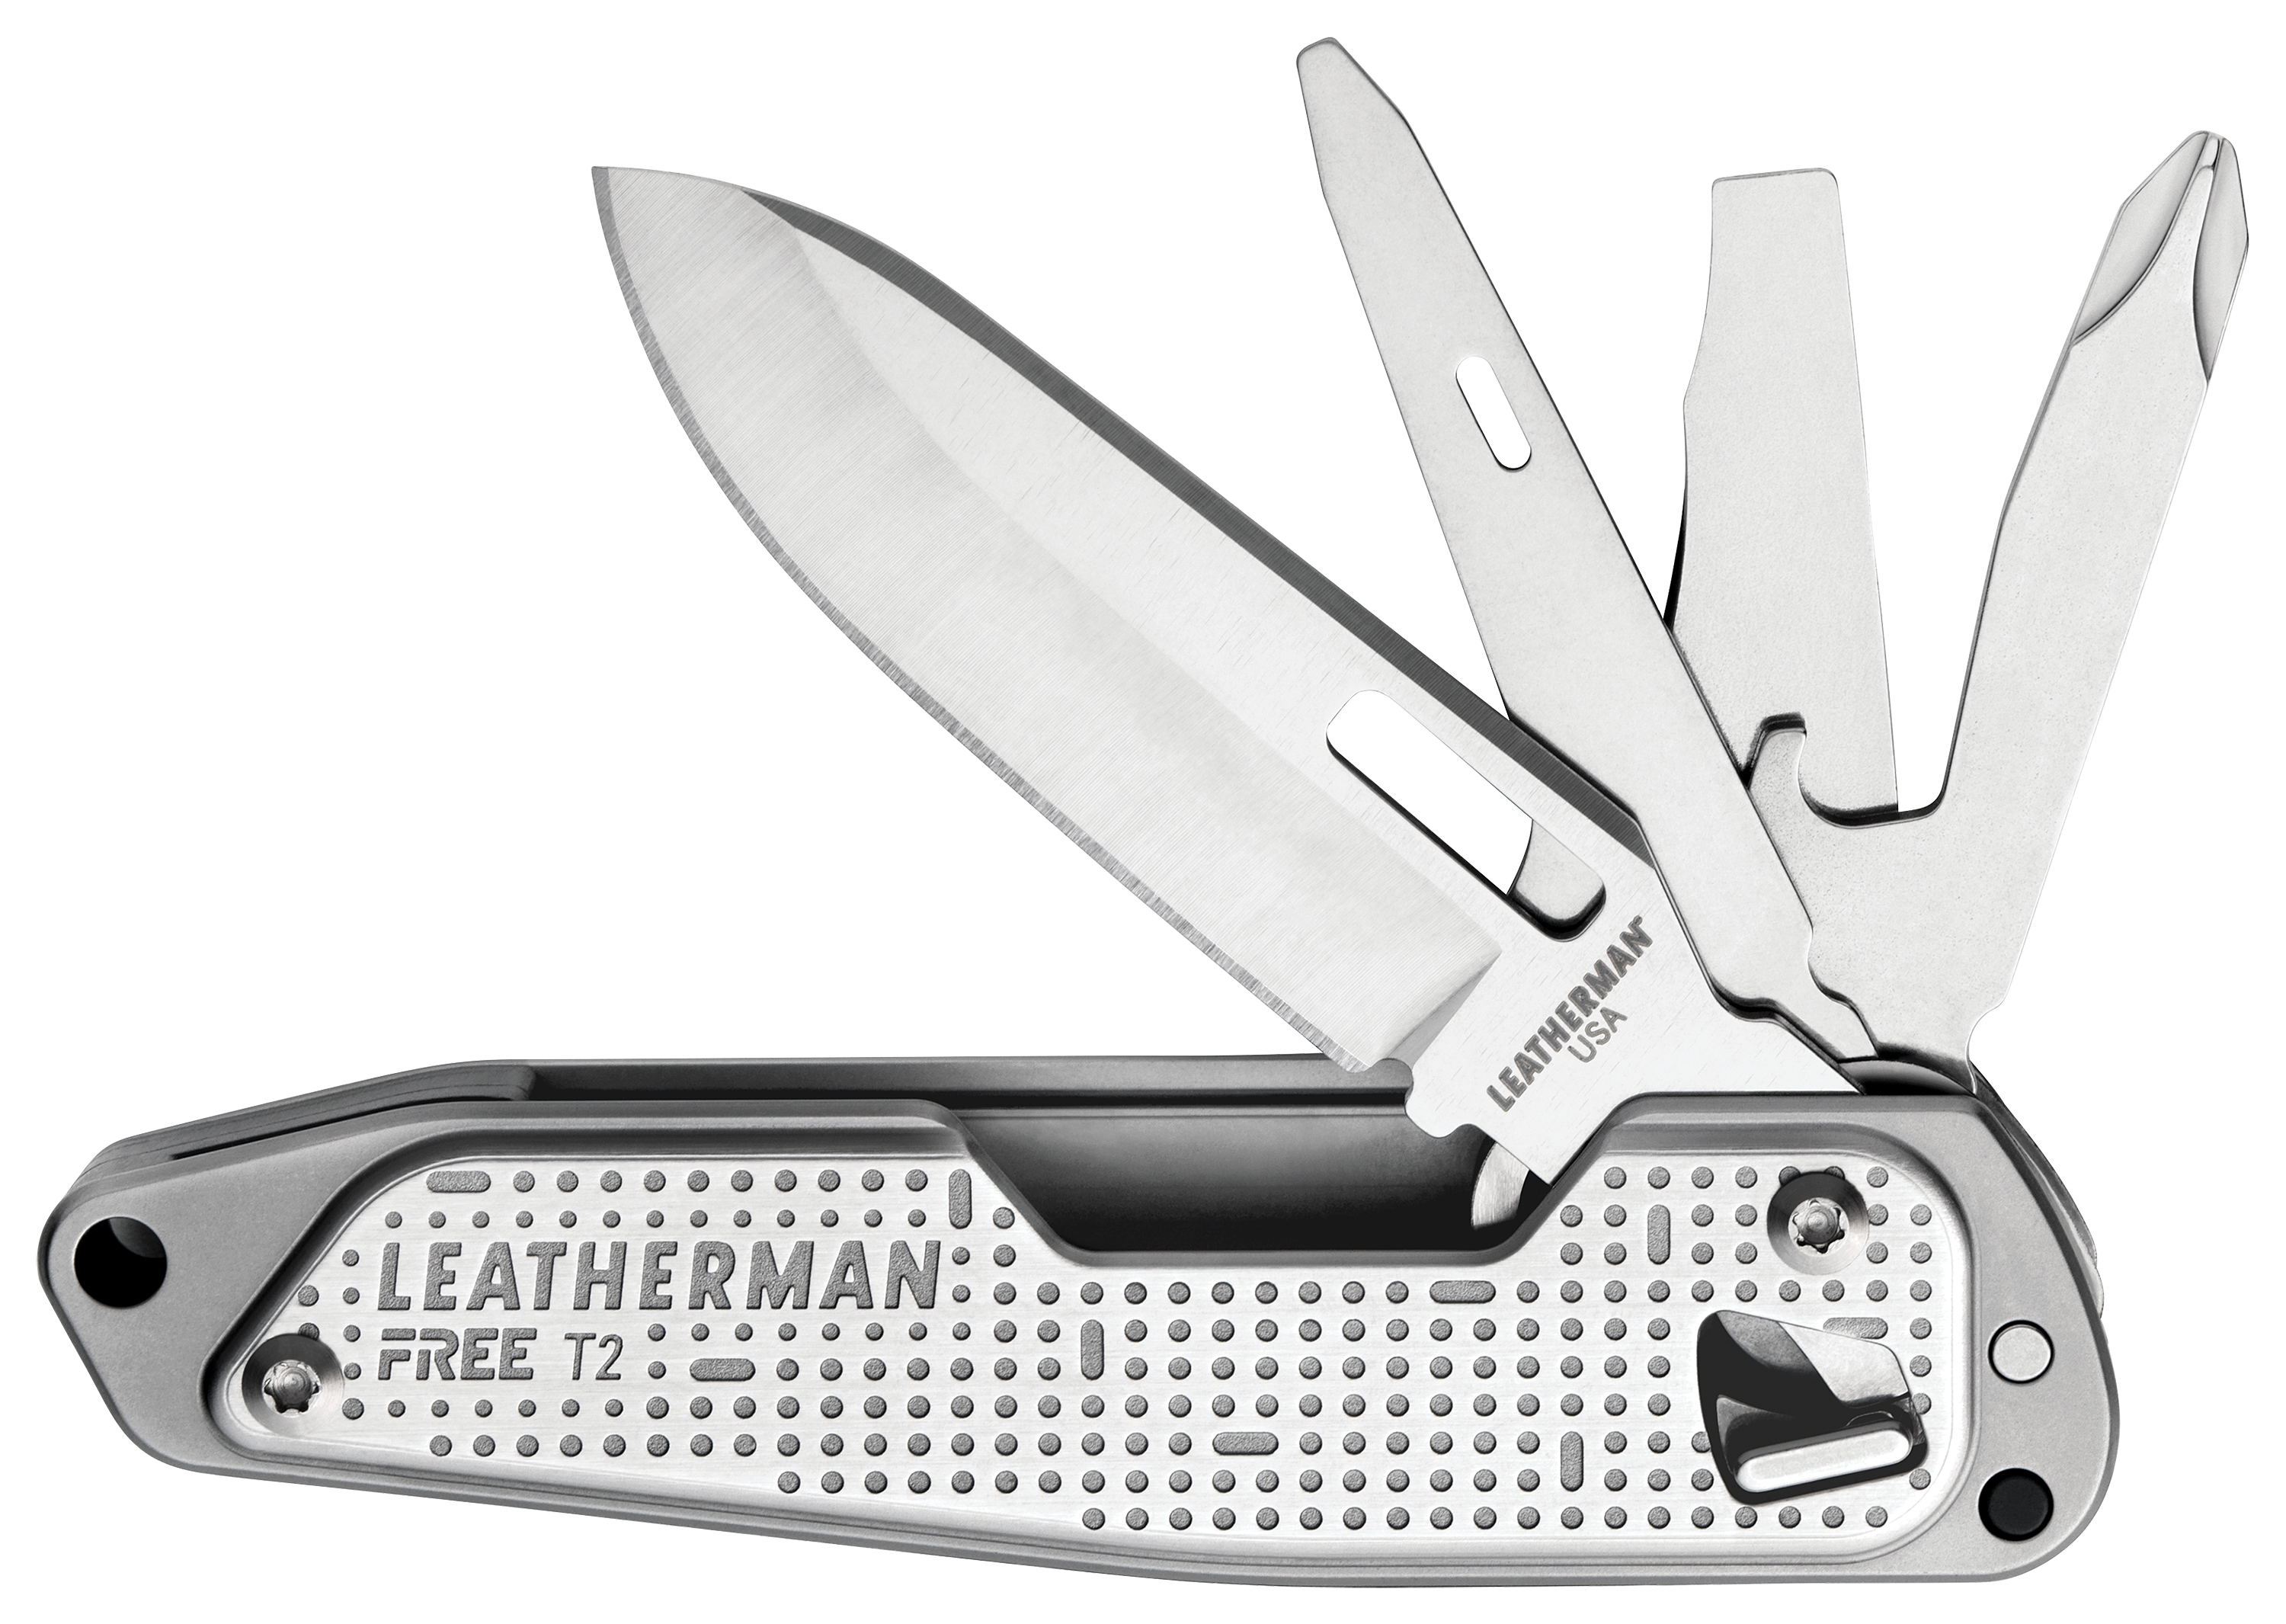 Leatherman FREE T2 Multi-Tool Pocket Knife